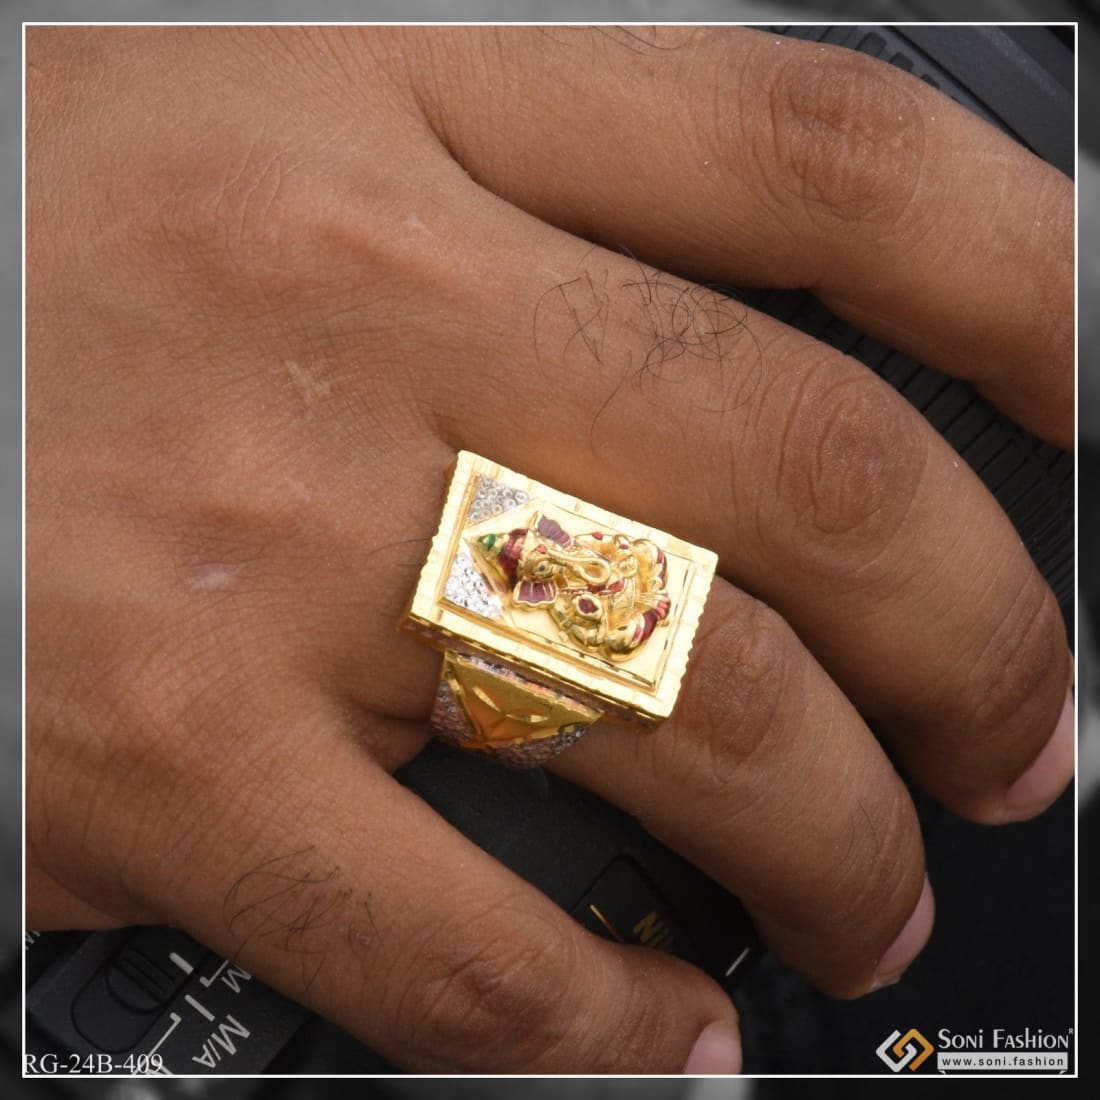 Buy Ganesh Stack Ring Gold and Silver Ganesh Ring Yoga Jewelry Yoga Gold  Ring Yoga Brass Ring Elephant Gold Ring Elephant Ring Online in India - Etsy